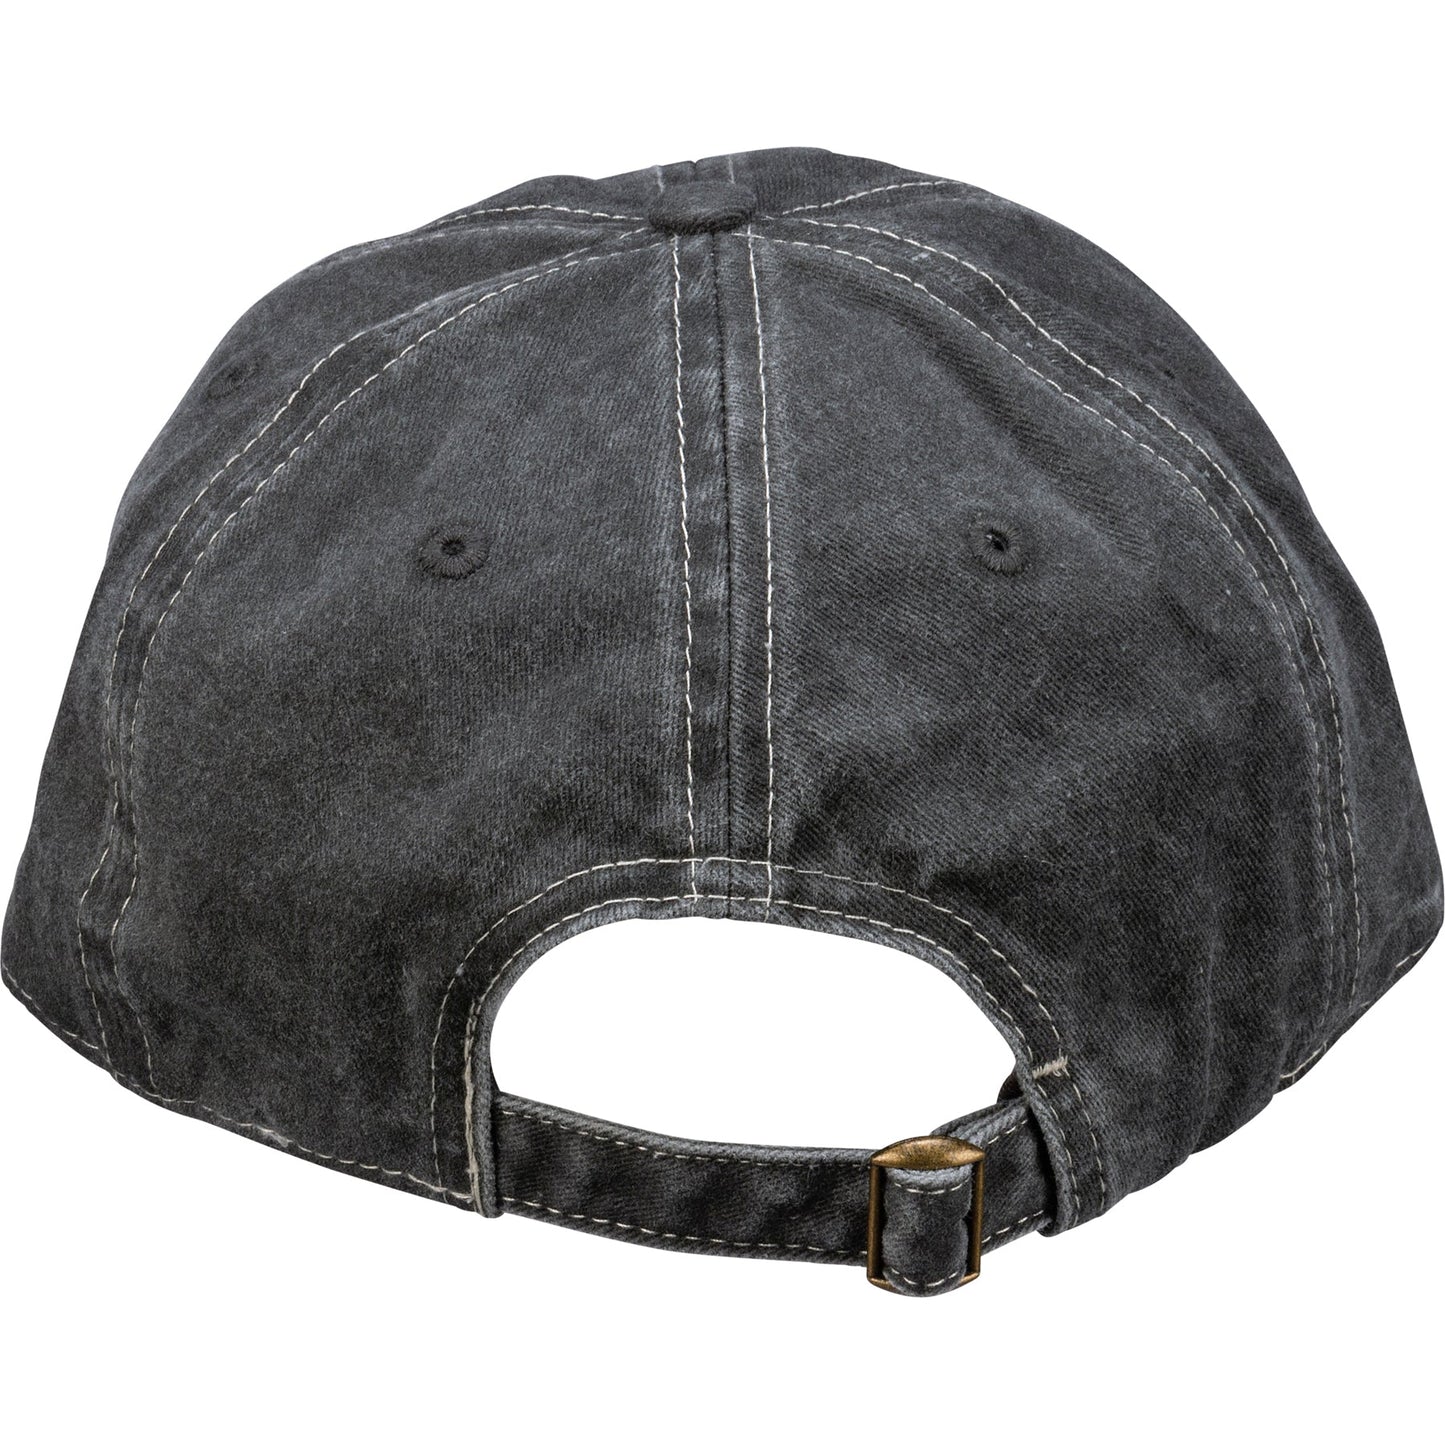 You Got This Baseball Stonewashed Cap | Adjustable Closure Unisex Hat